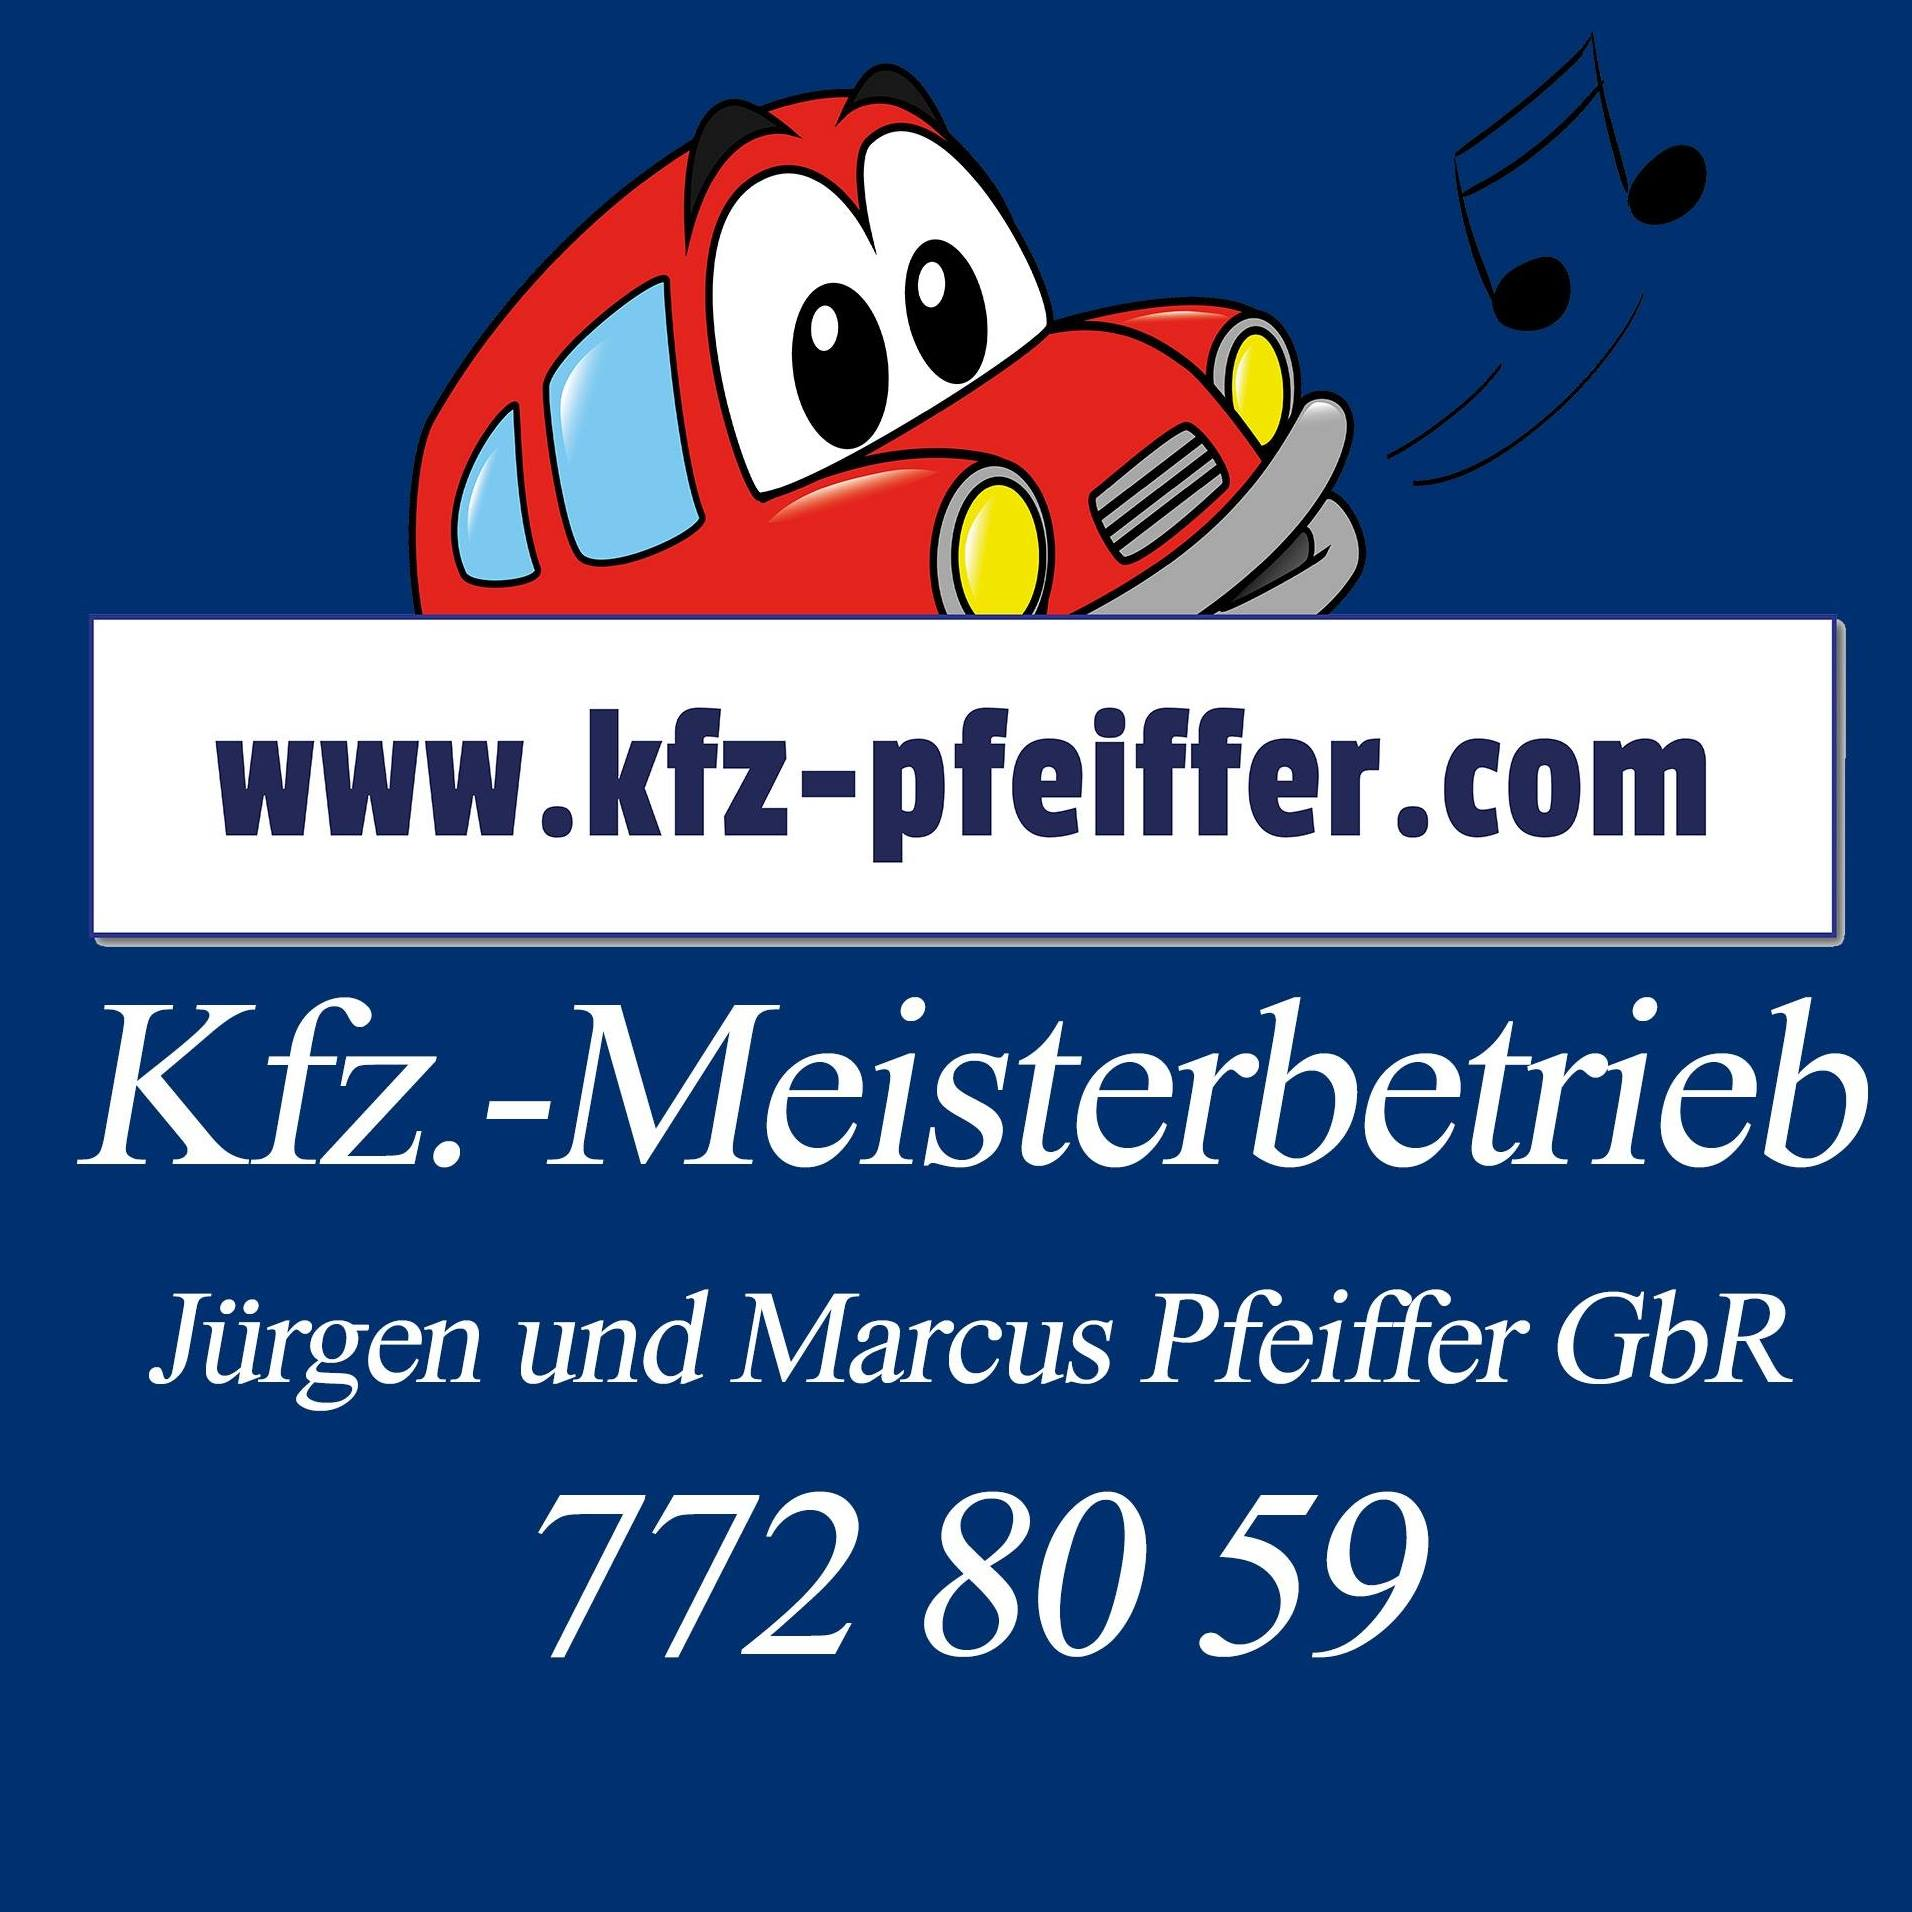 Kfz.-Meisterbetrieb Pfeiffer, Autoreparaturwerkstatt (Jürgen und Marcus Pfeiffer GbR) in Berlin - Logo